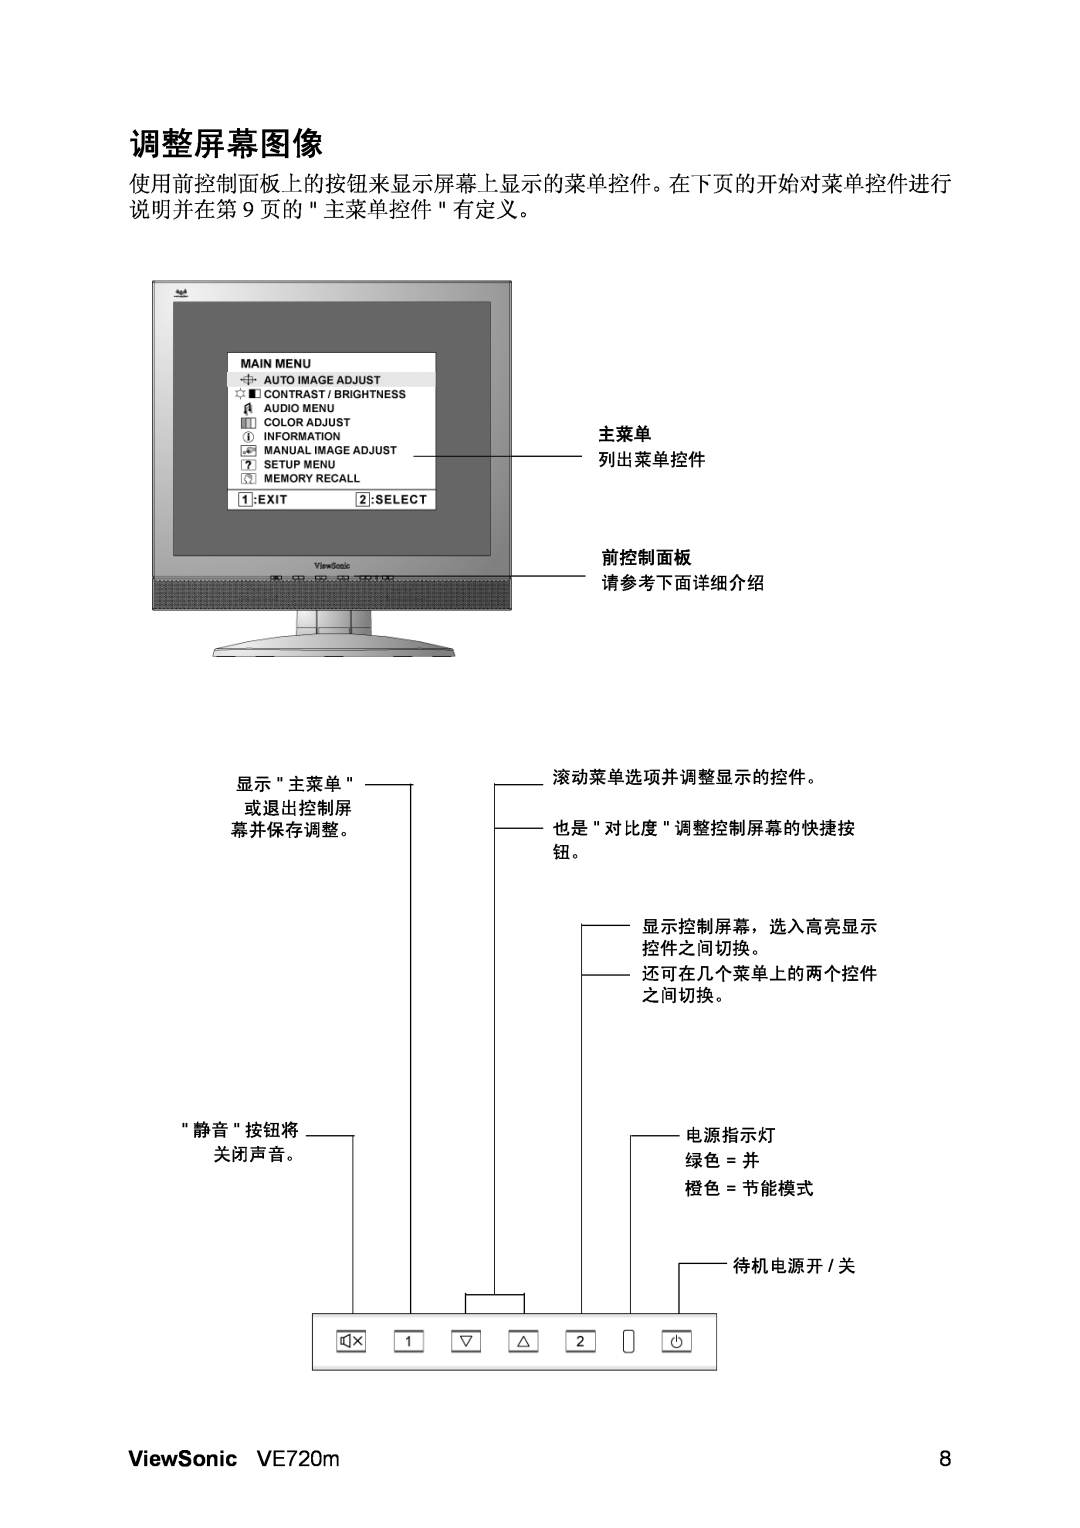 ViewSonic VS10697 manual 调整屏幕图像, 使用前控制面板上的按钮来显示屏幕上显示的菜单控件。在下页的开始对菜单控件进行 说明并在第 9 页的 主菜单控件 有定义。, ViewSonic VE720m 